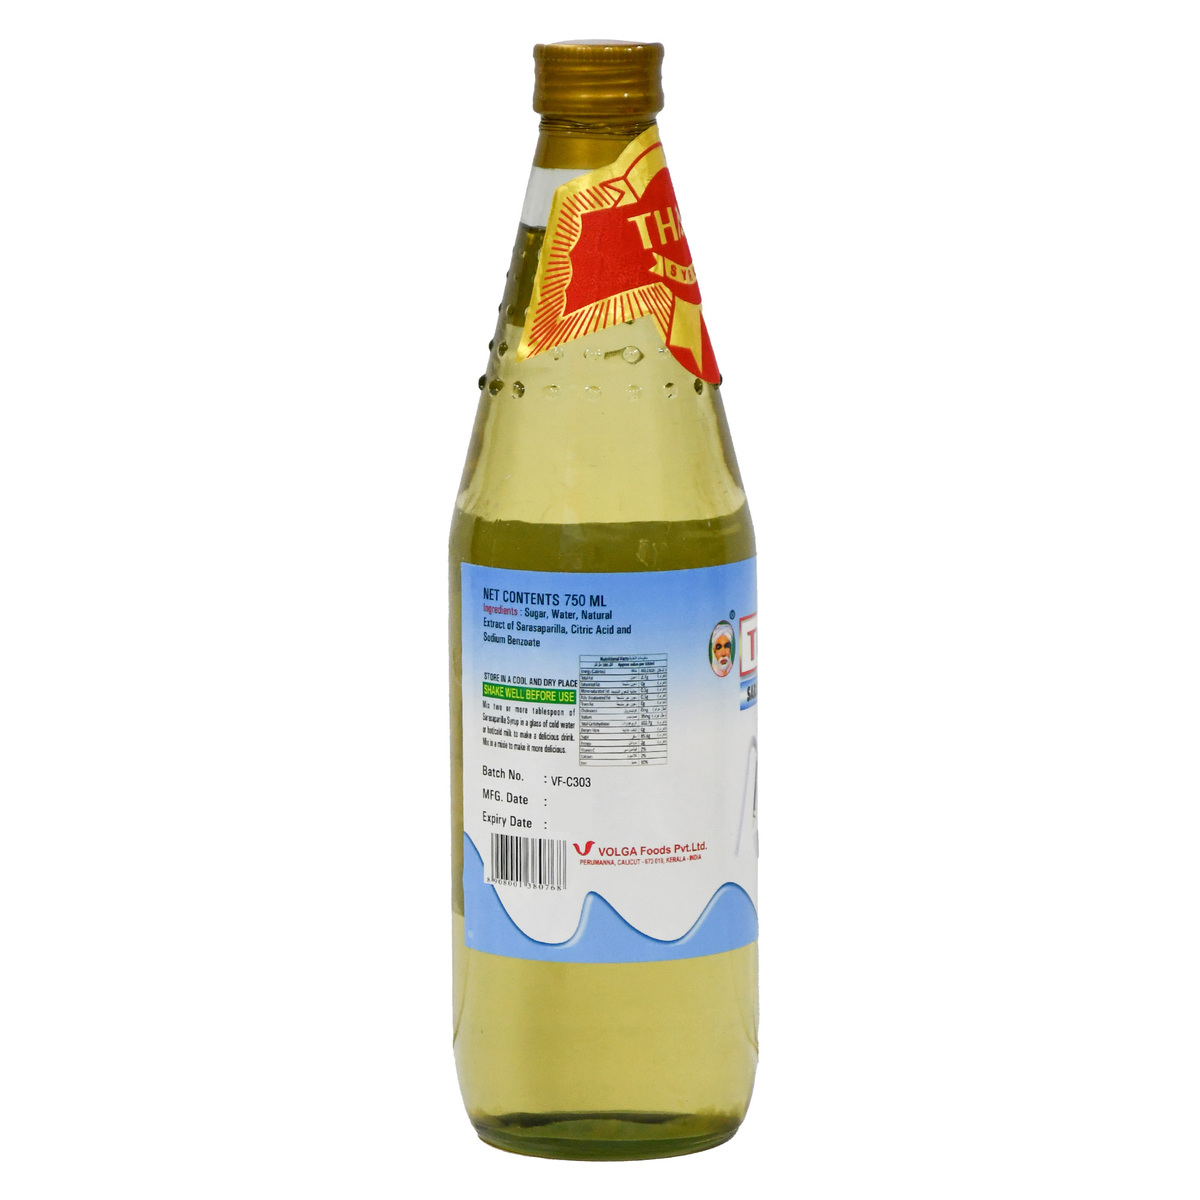 Thadi Sarasaparilla Syrup 750 ml